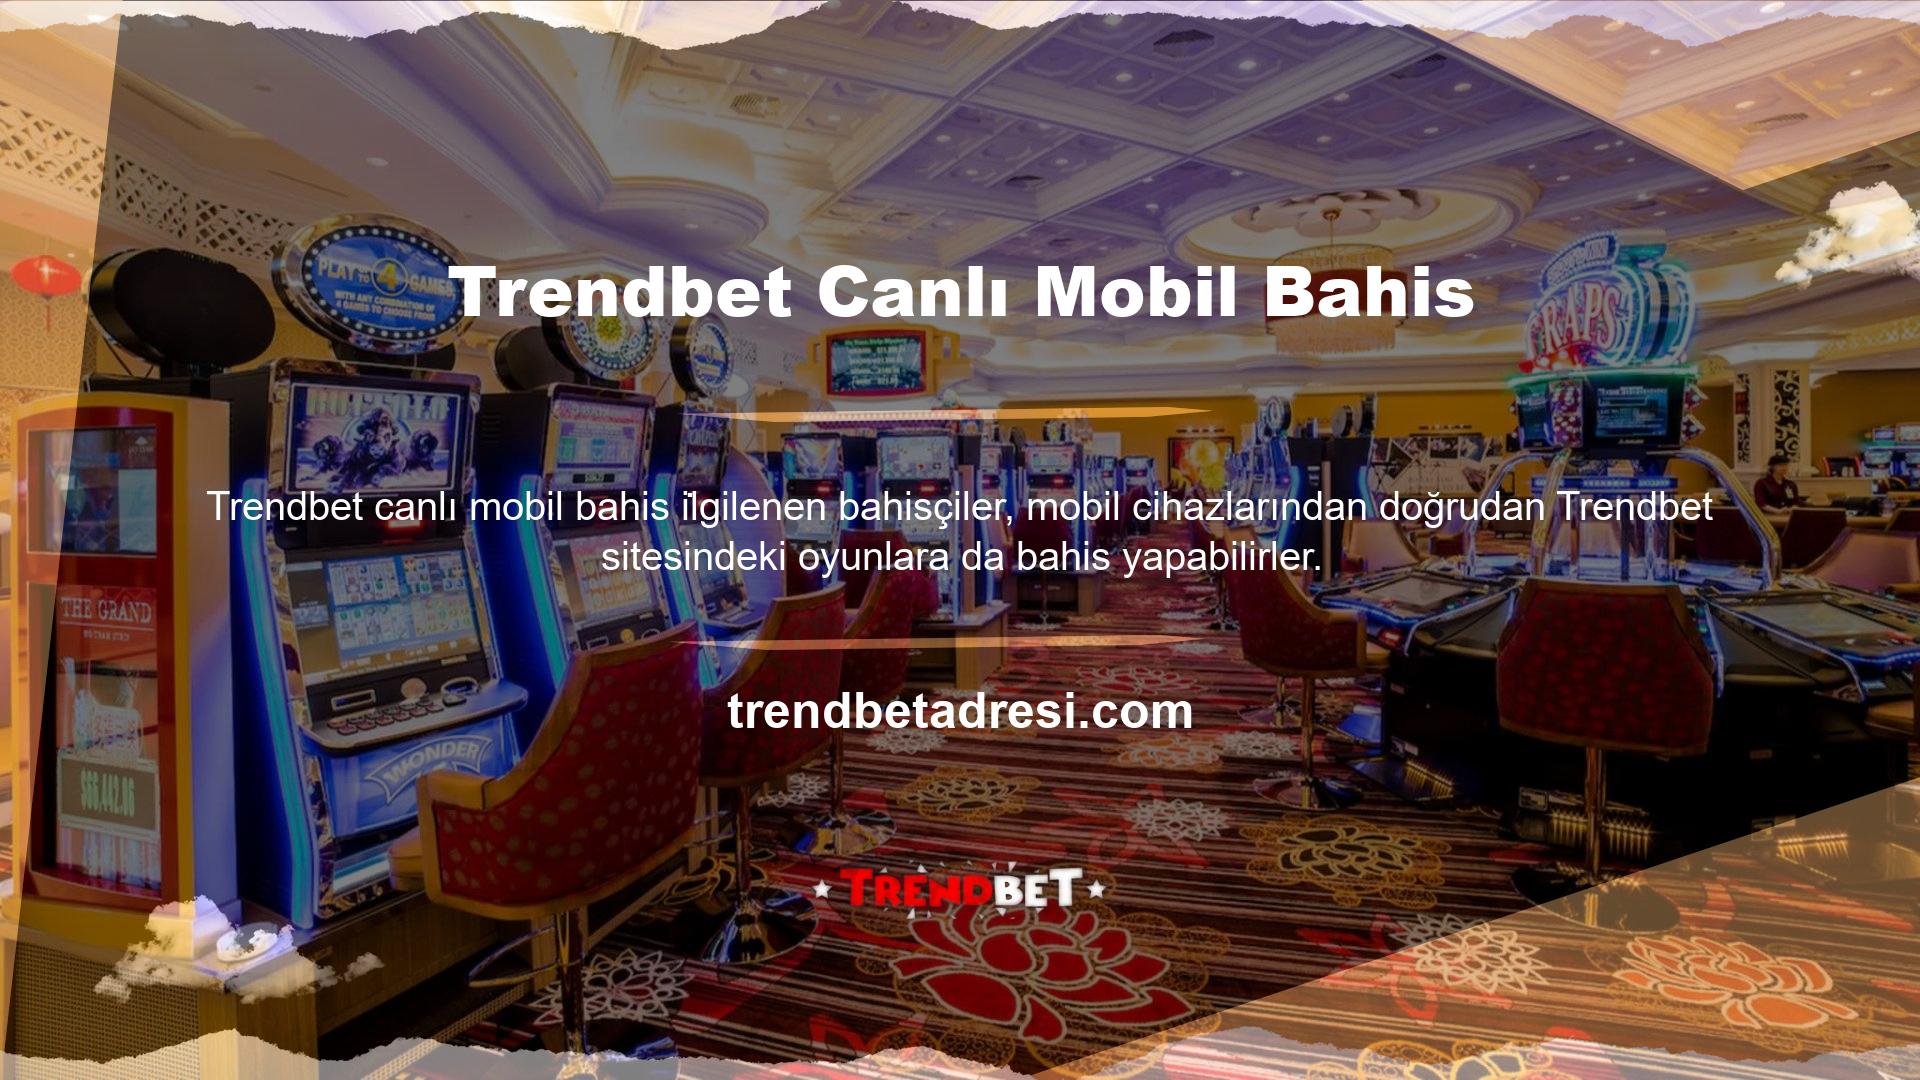 Trendbet web sitesi, mobil kullanım için çok iyi bir teknik altyapıya sahiptir